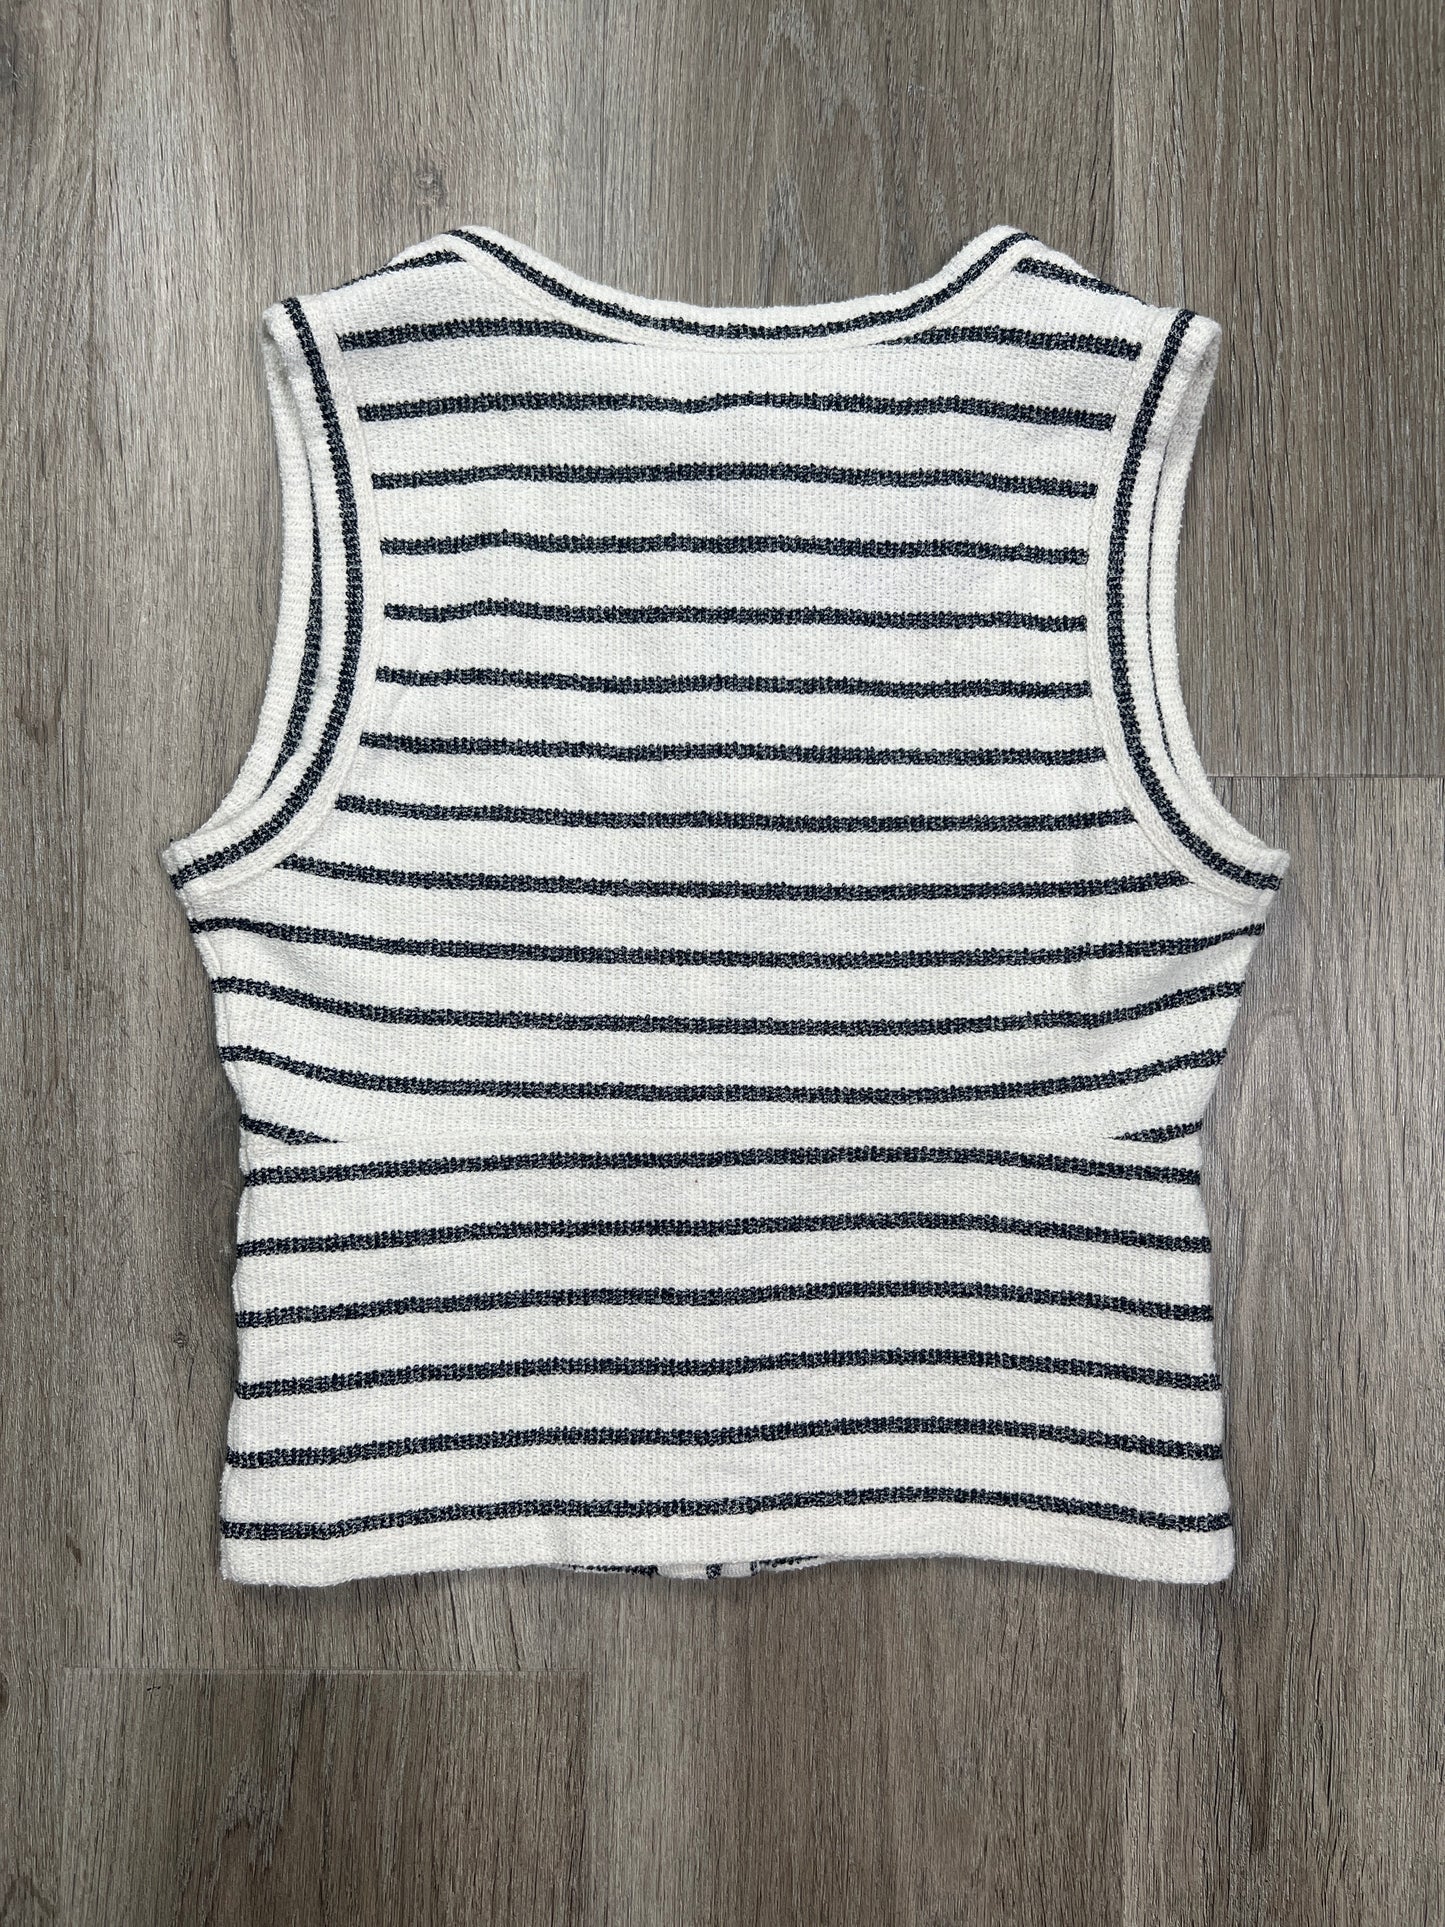 Striped Pattern Blouse Sleeveless Madewell, Size Xxs